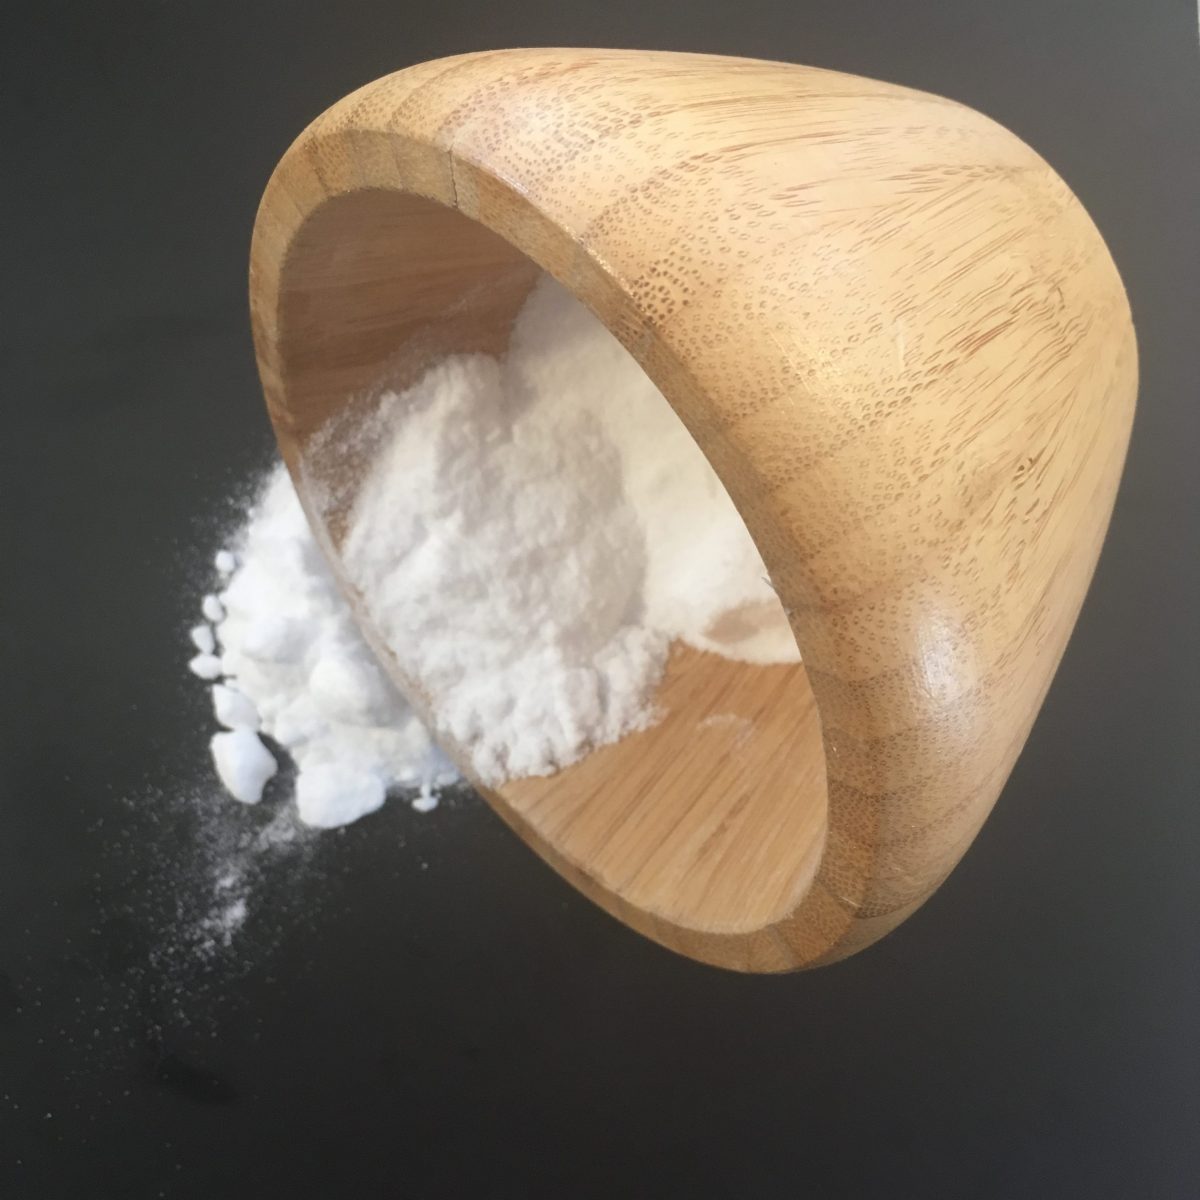 Bicarbonate de soude 5 kg - Qualité Alimentaire